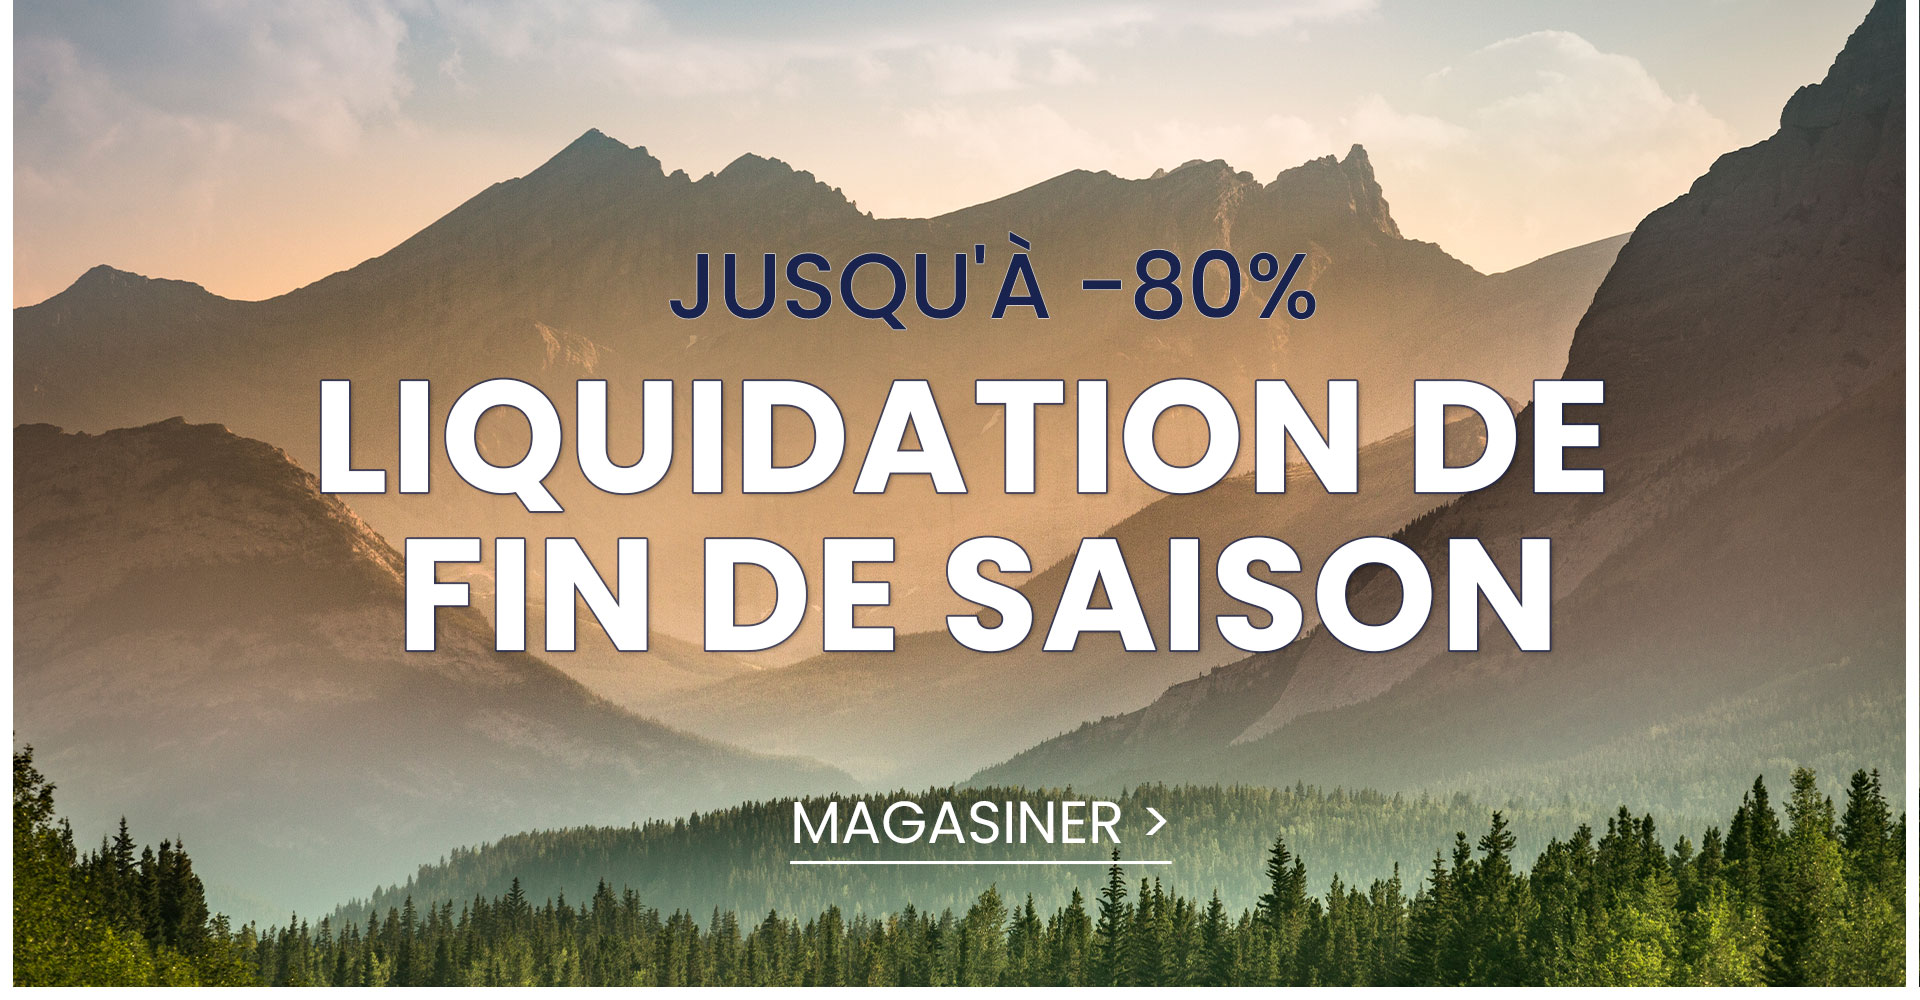 LIQUIDATION FIN DE SAISON JUQU'A -80% SUR TOUT LE SITE